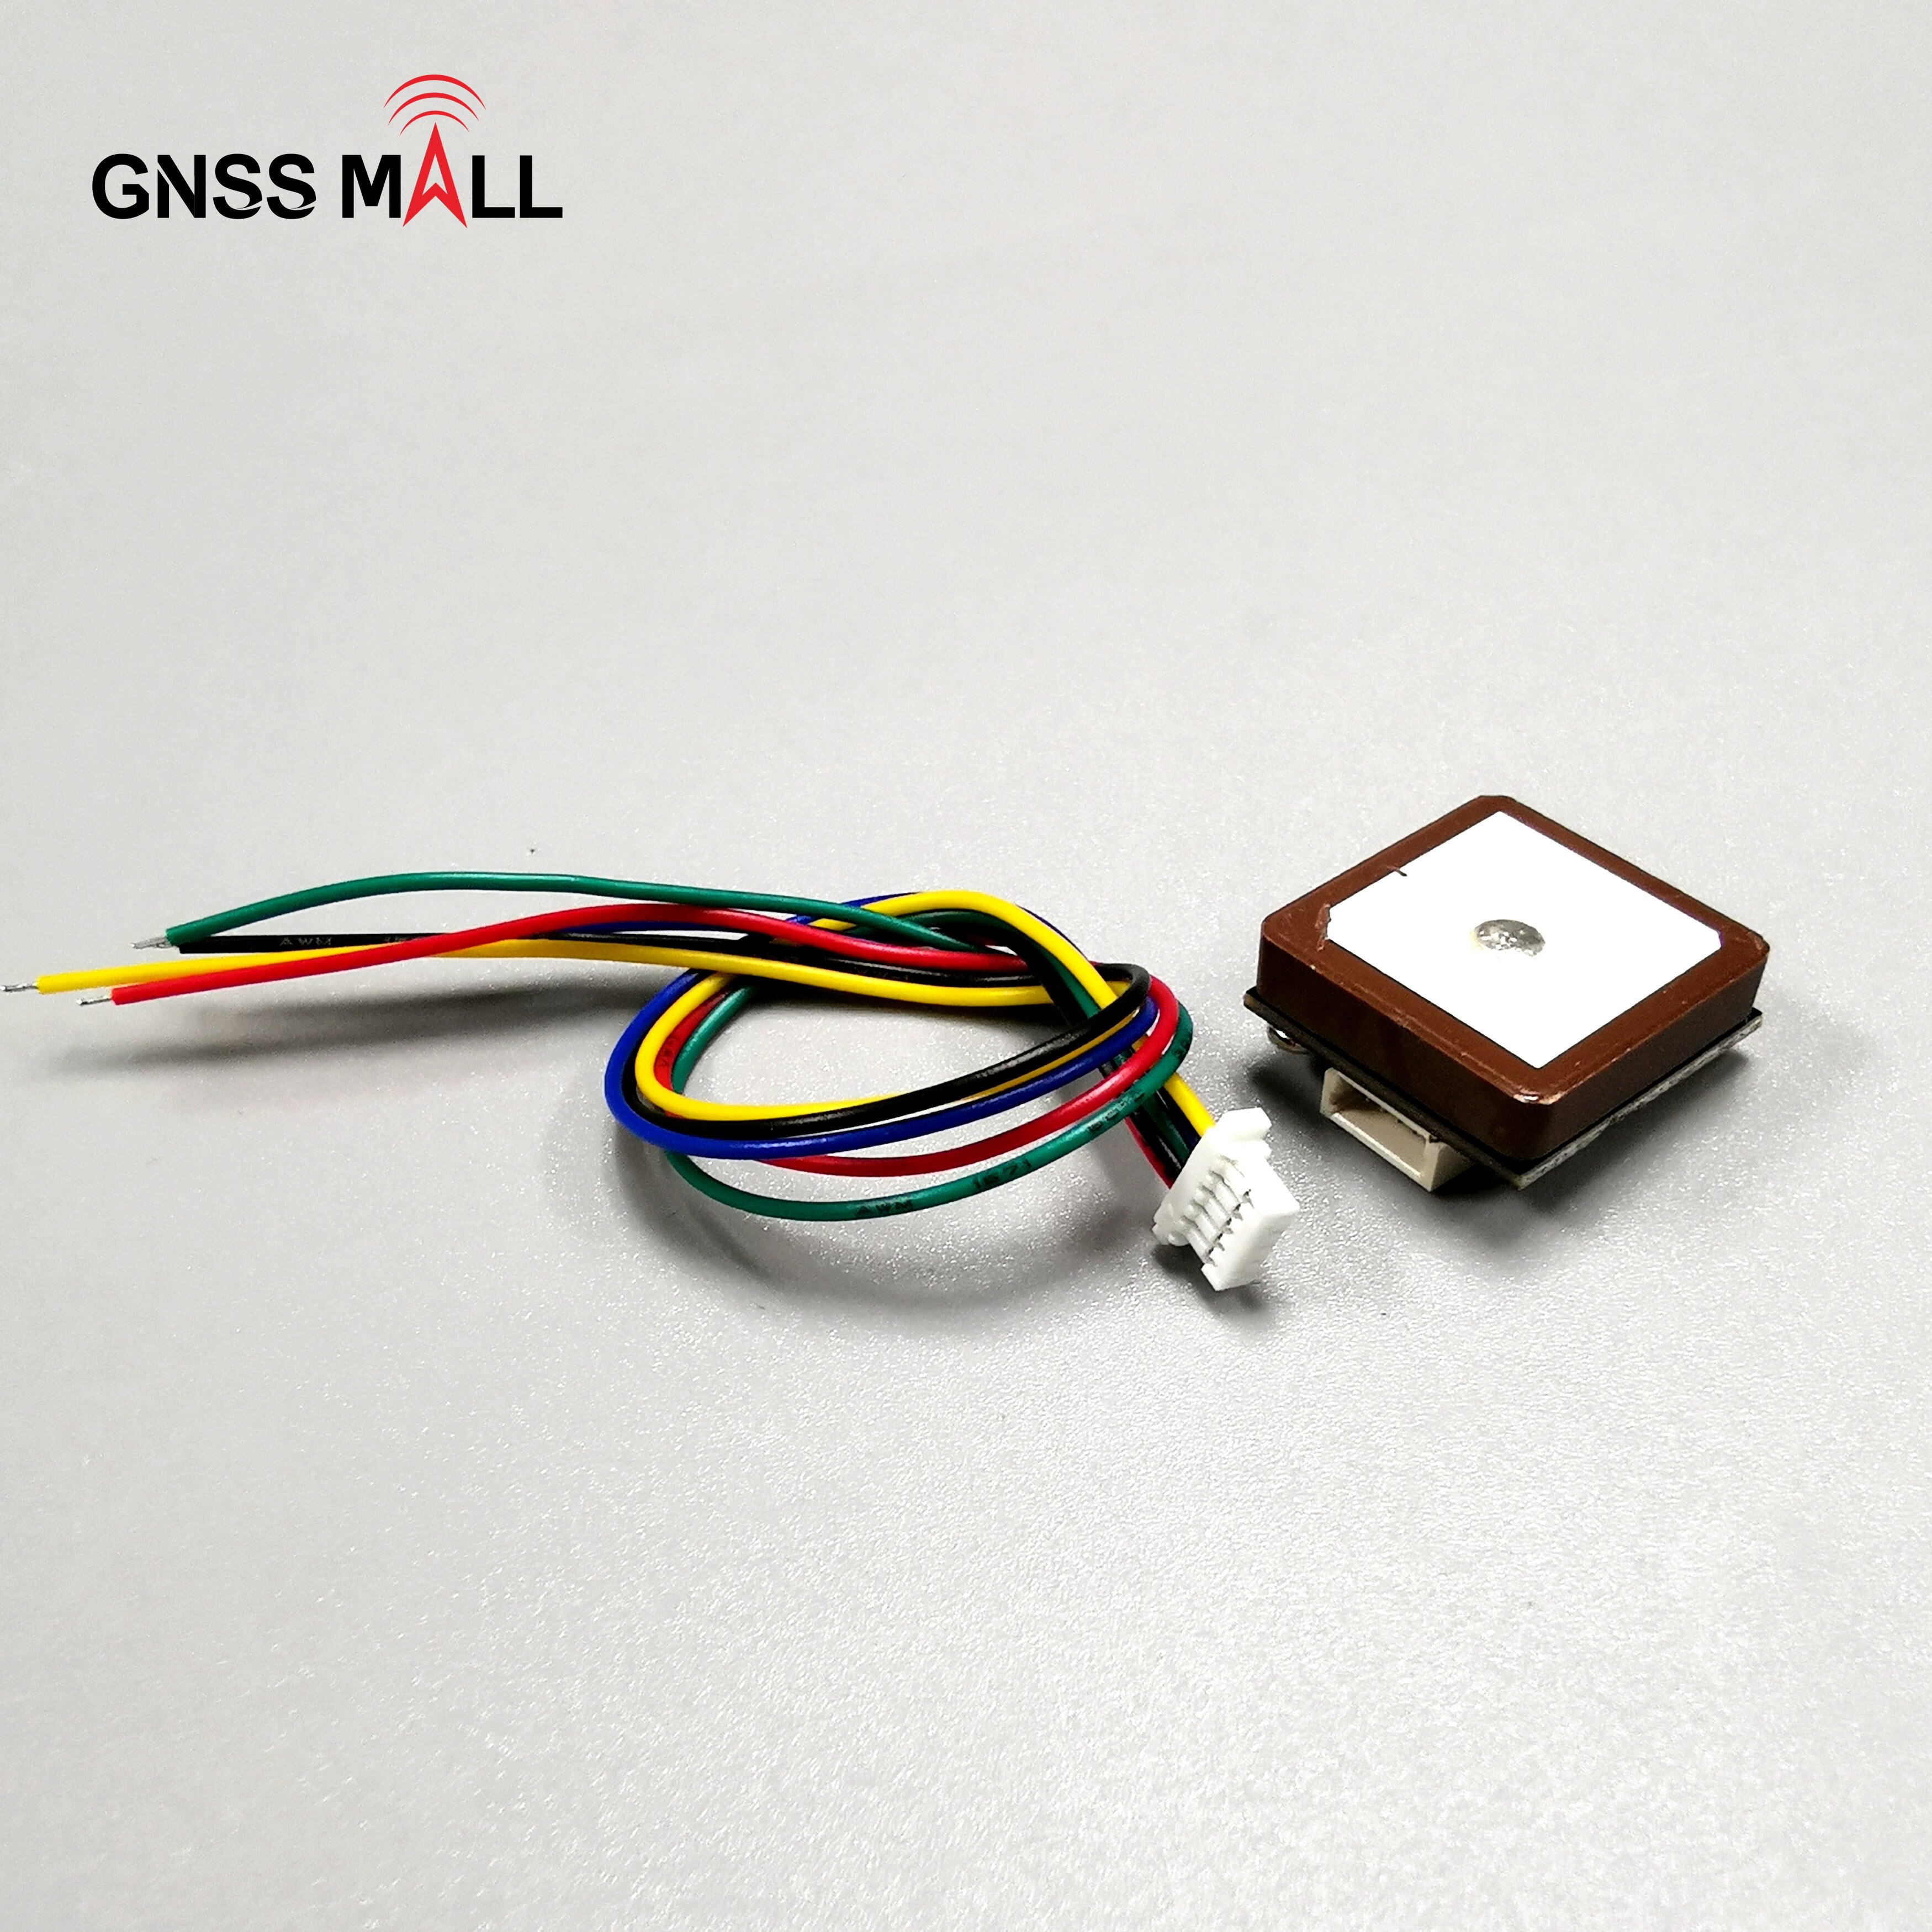 Kleine formaat gps drone UART niveau GPS Module GPS GLONASS Dual-mode uav GNSS module, GPS module antenne, ingebouwde Flash topgnss